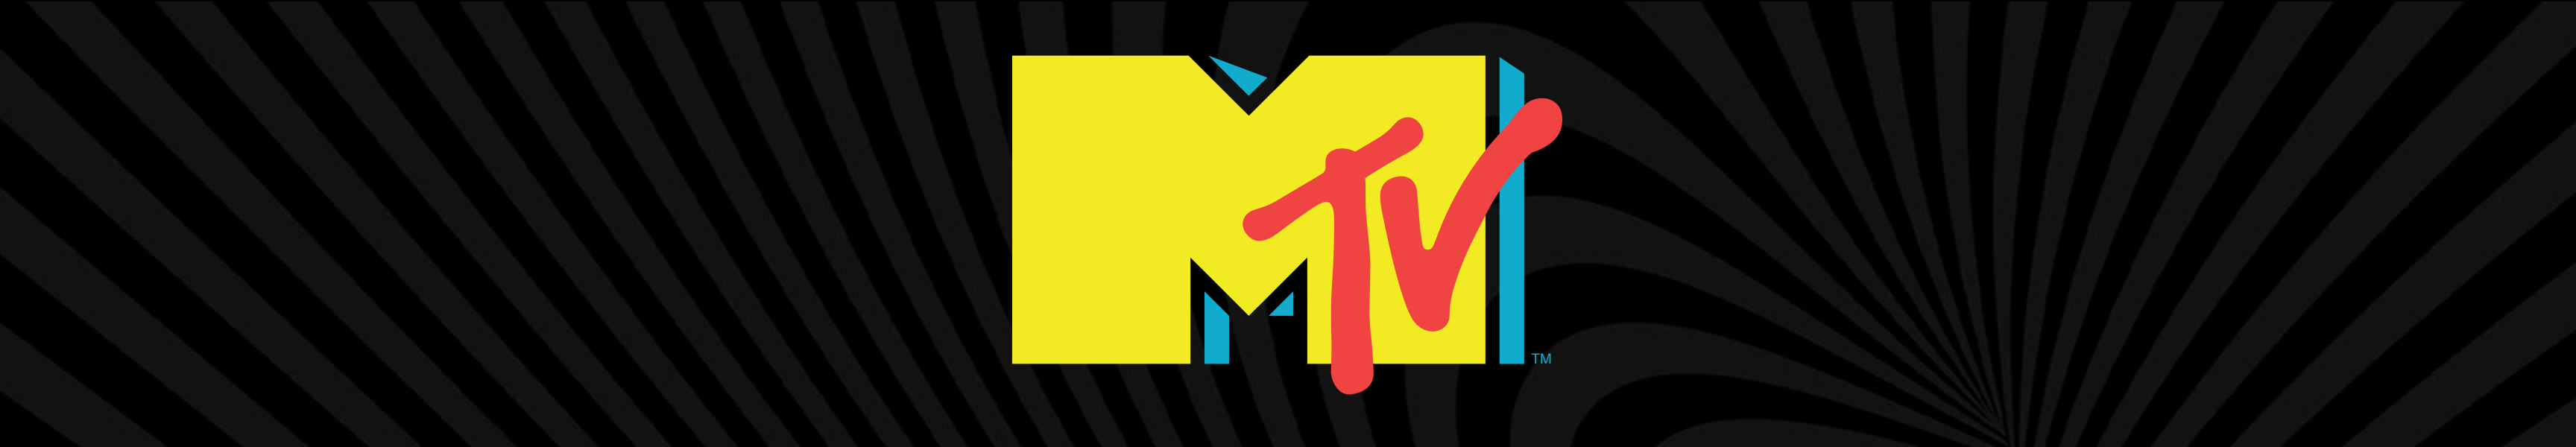 MTV Letzte Chance Geschenke